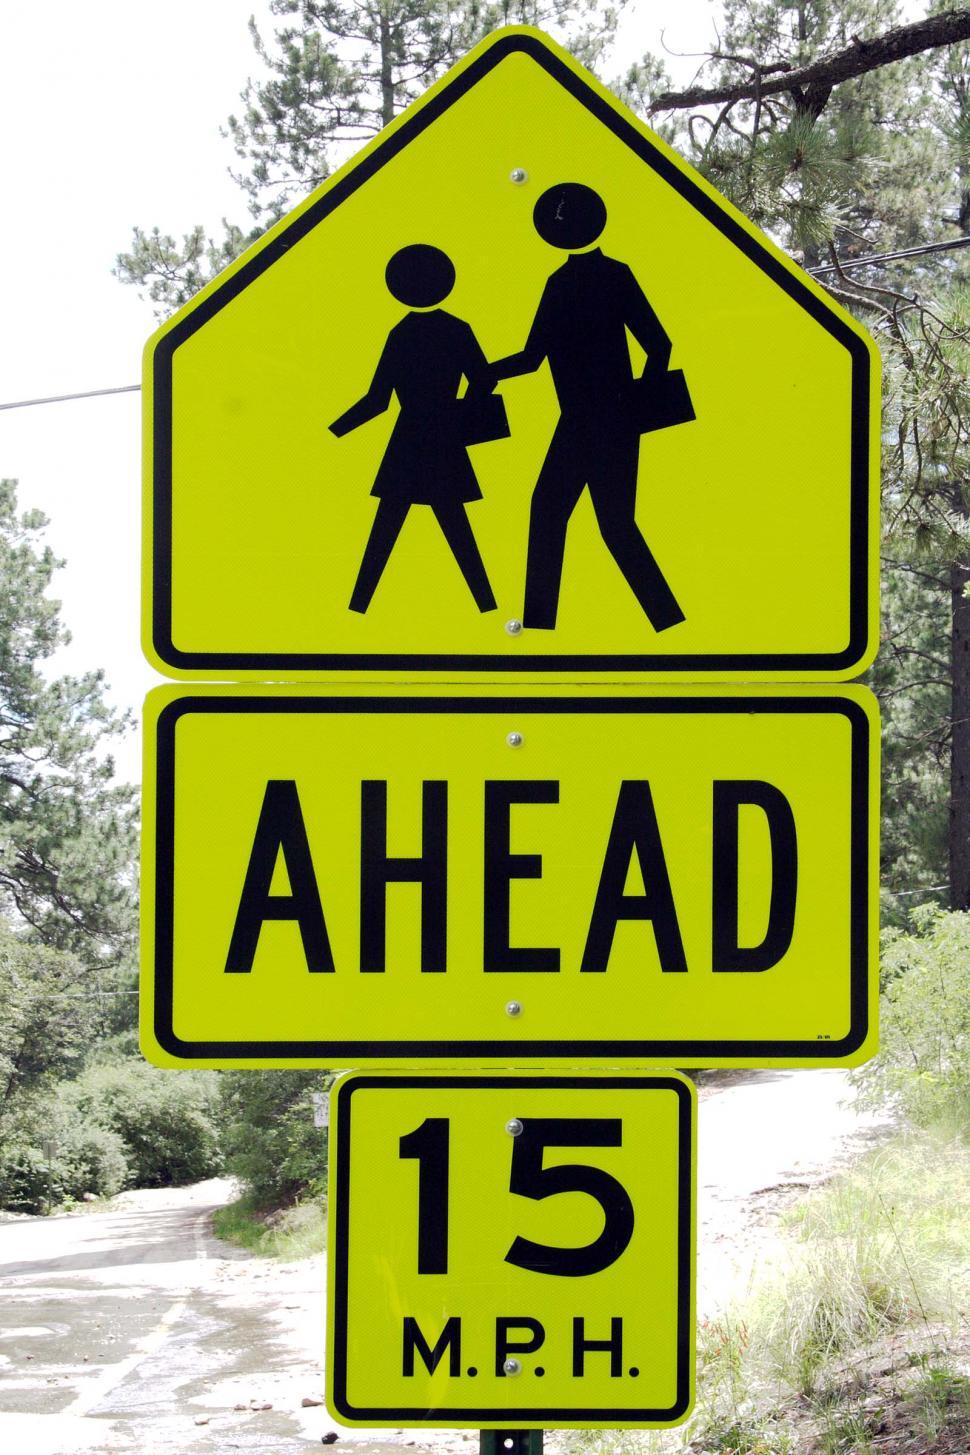 Free Image of Pedestrian warning sign 